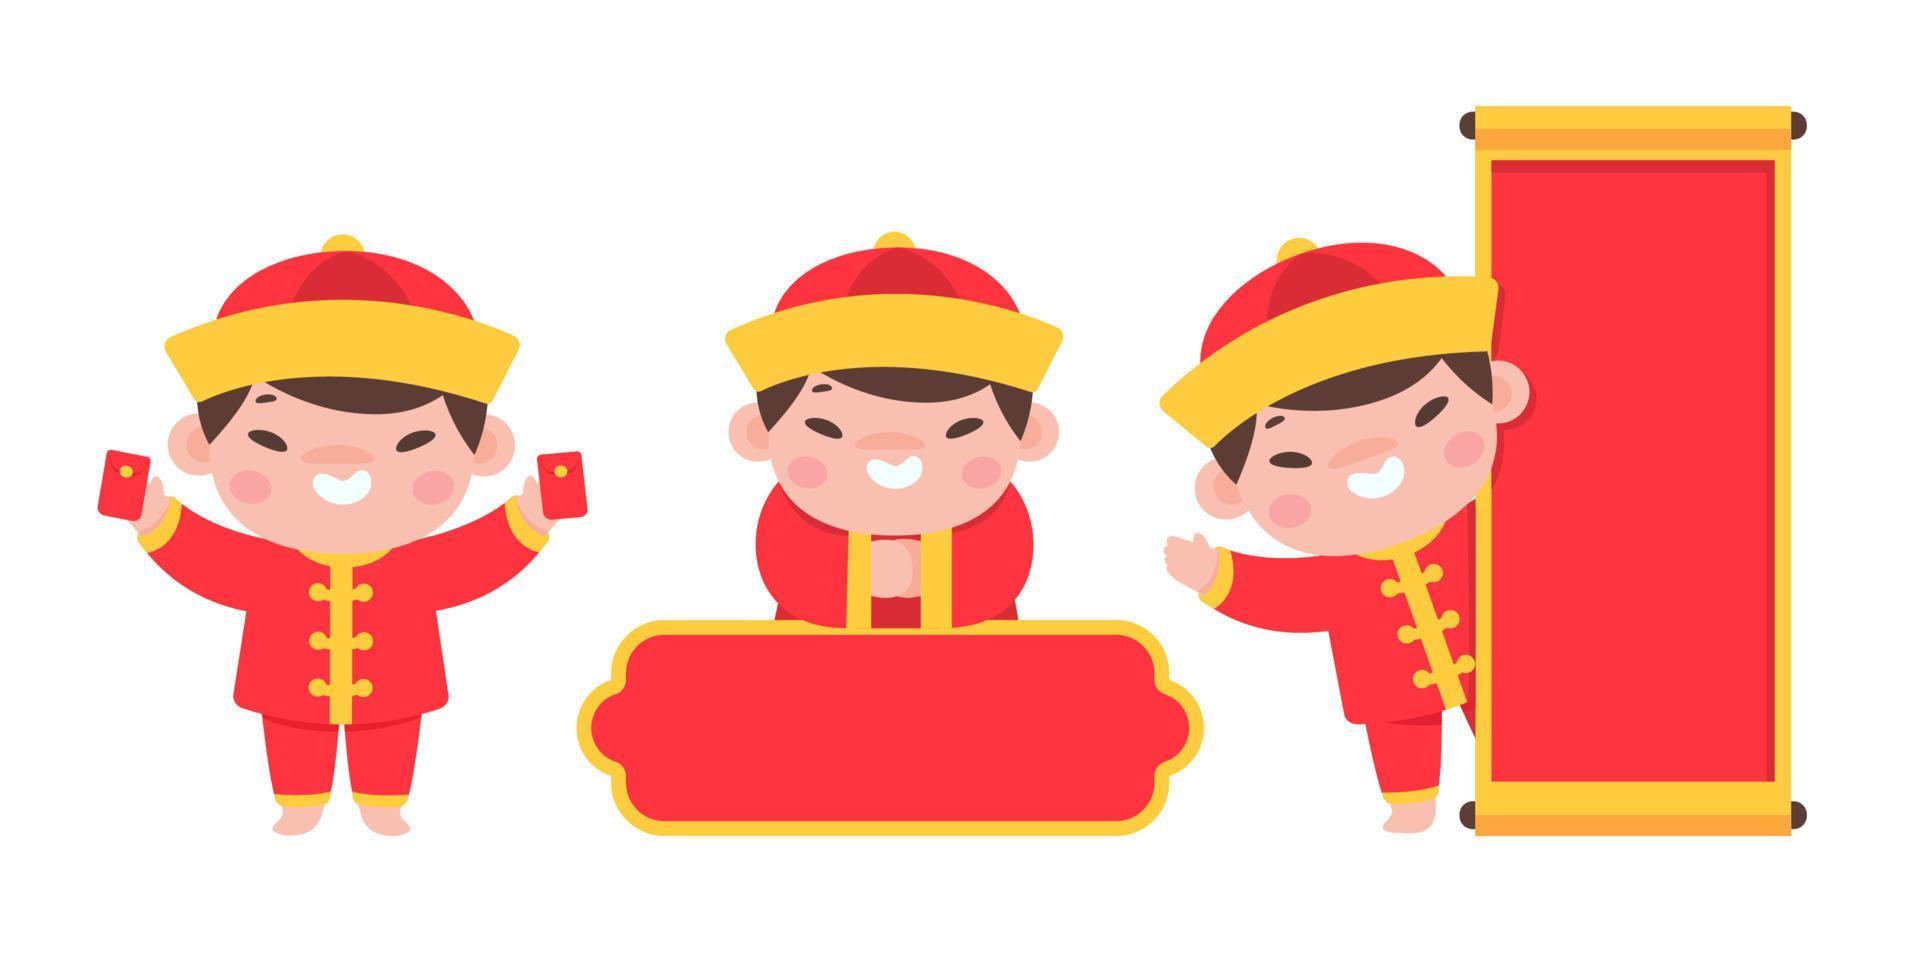 les enfants chinois portant des costumes nationaux rouges célèbrent le nouvel an chinois vecteur